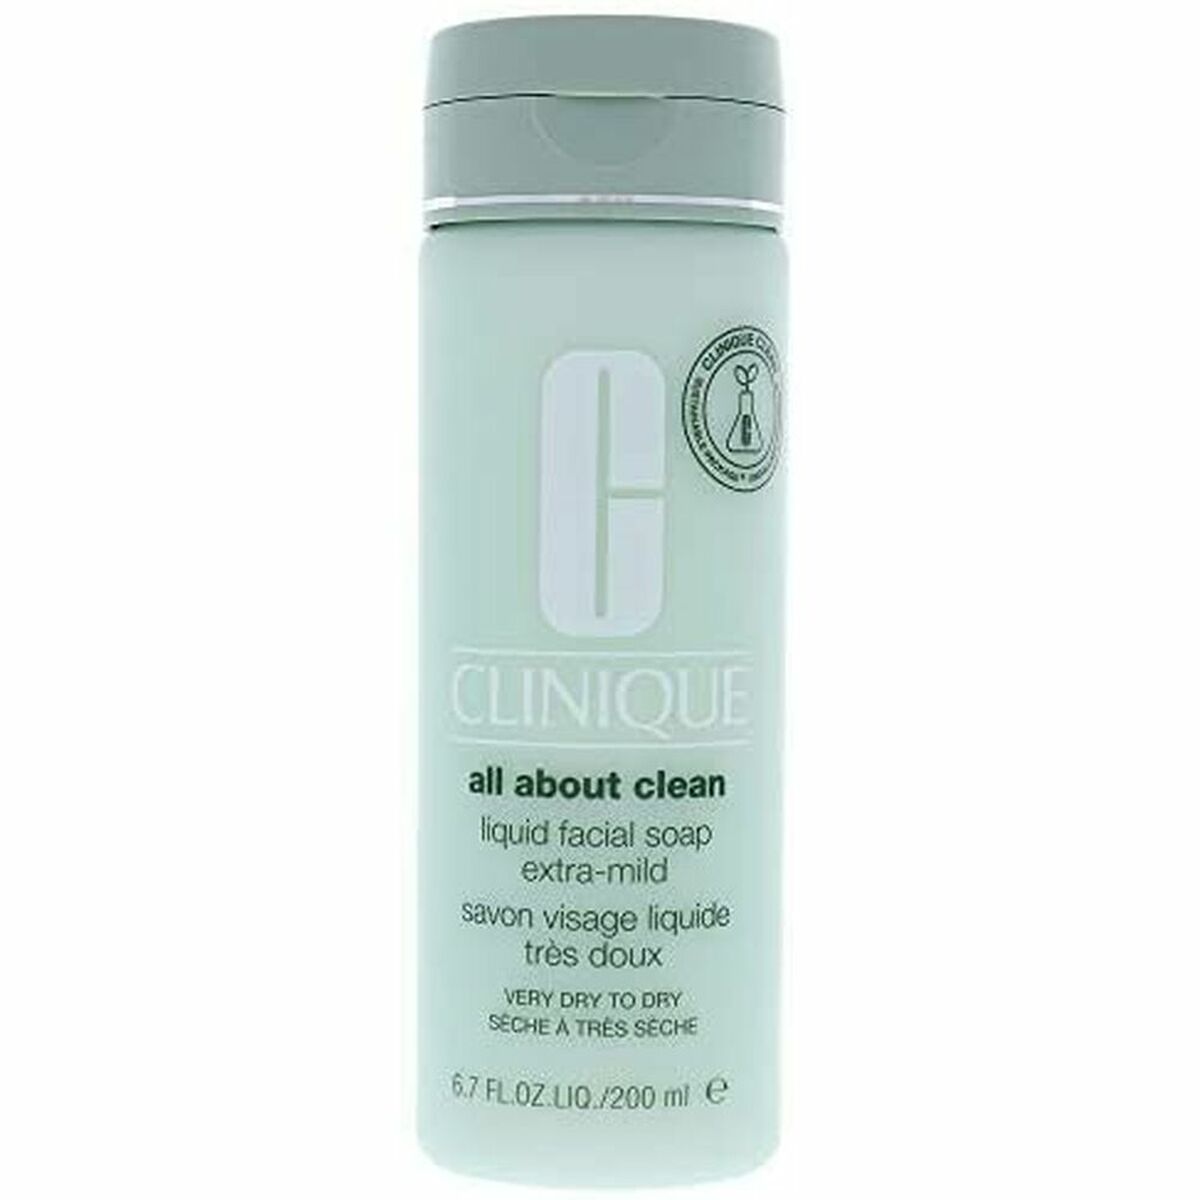 Osta tuote Kasvojen puhdistusgeeli Liquid Facial Soap Extra Mild Clinique verkkokaupastamme Korhone: Parfyymit & Kosmetiikka 10% alennuksella koodilla KORHONE